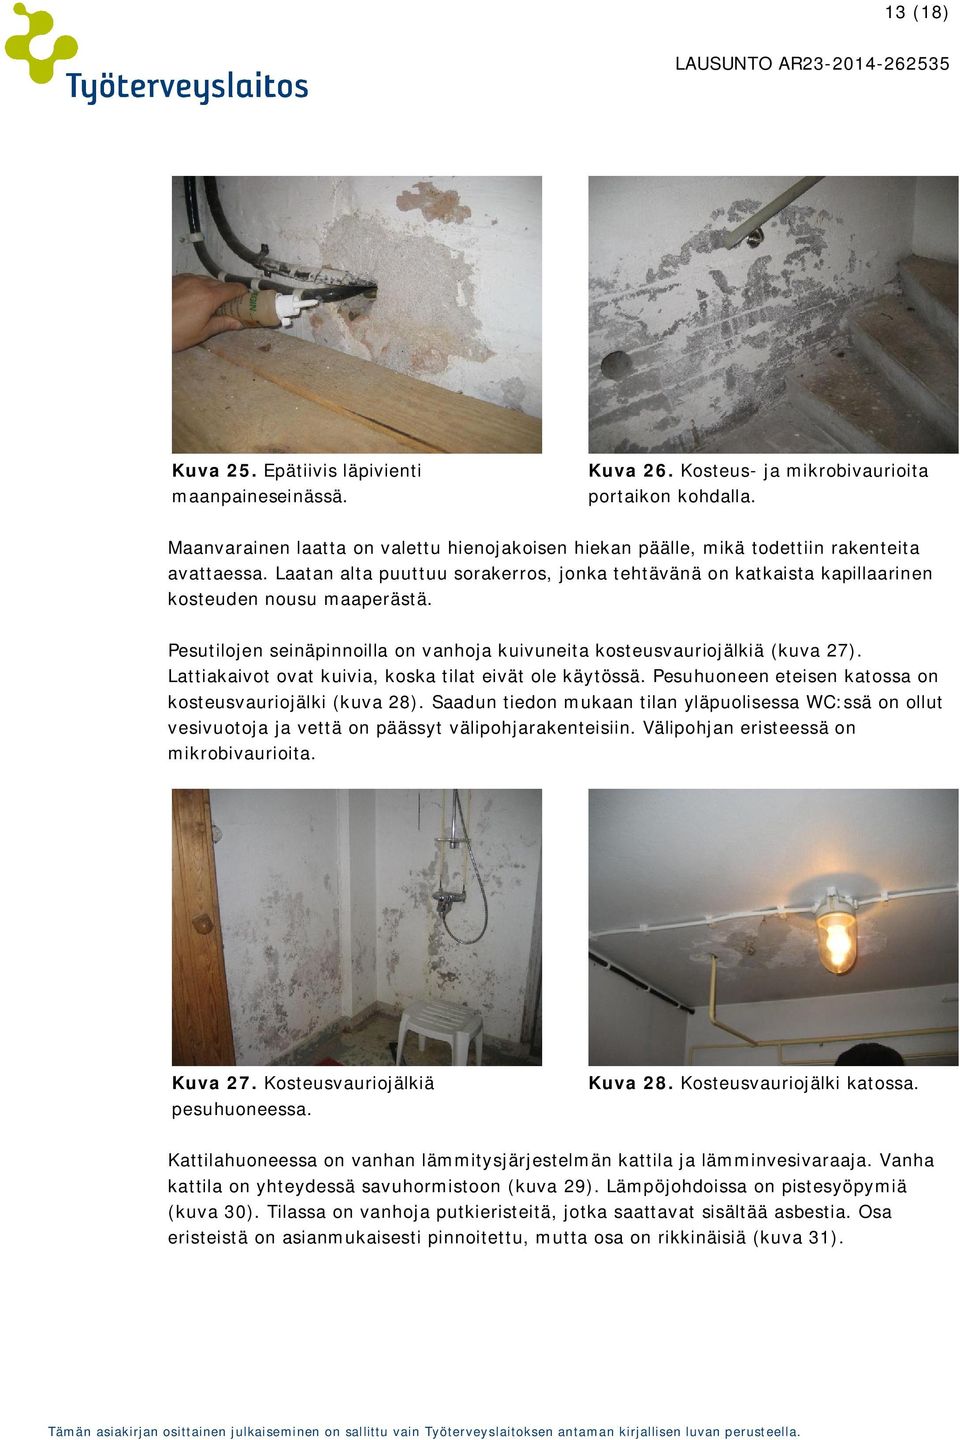 Pesutilojen seinäpinnoilla on vanhoja kuivuneita kosteusvauriojälkiä (kuva 27). Lattiakaivot ovat kuivia, koska tilat eivät ole käytössä. Pesuhuoneen eteisen katossa on kosteusvauriojälki (kuva 28).